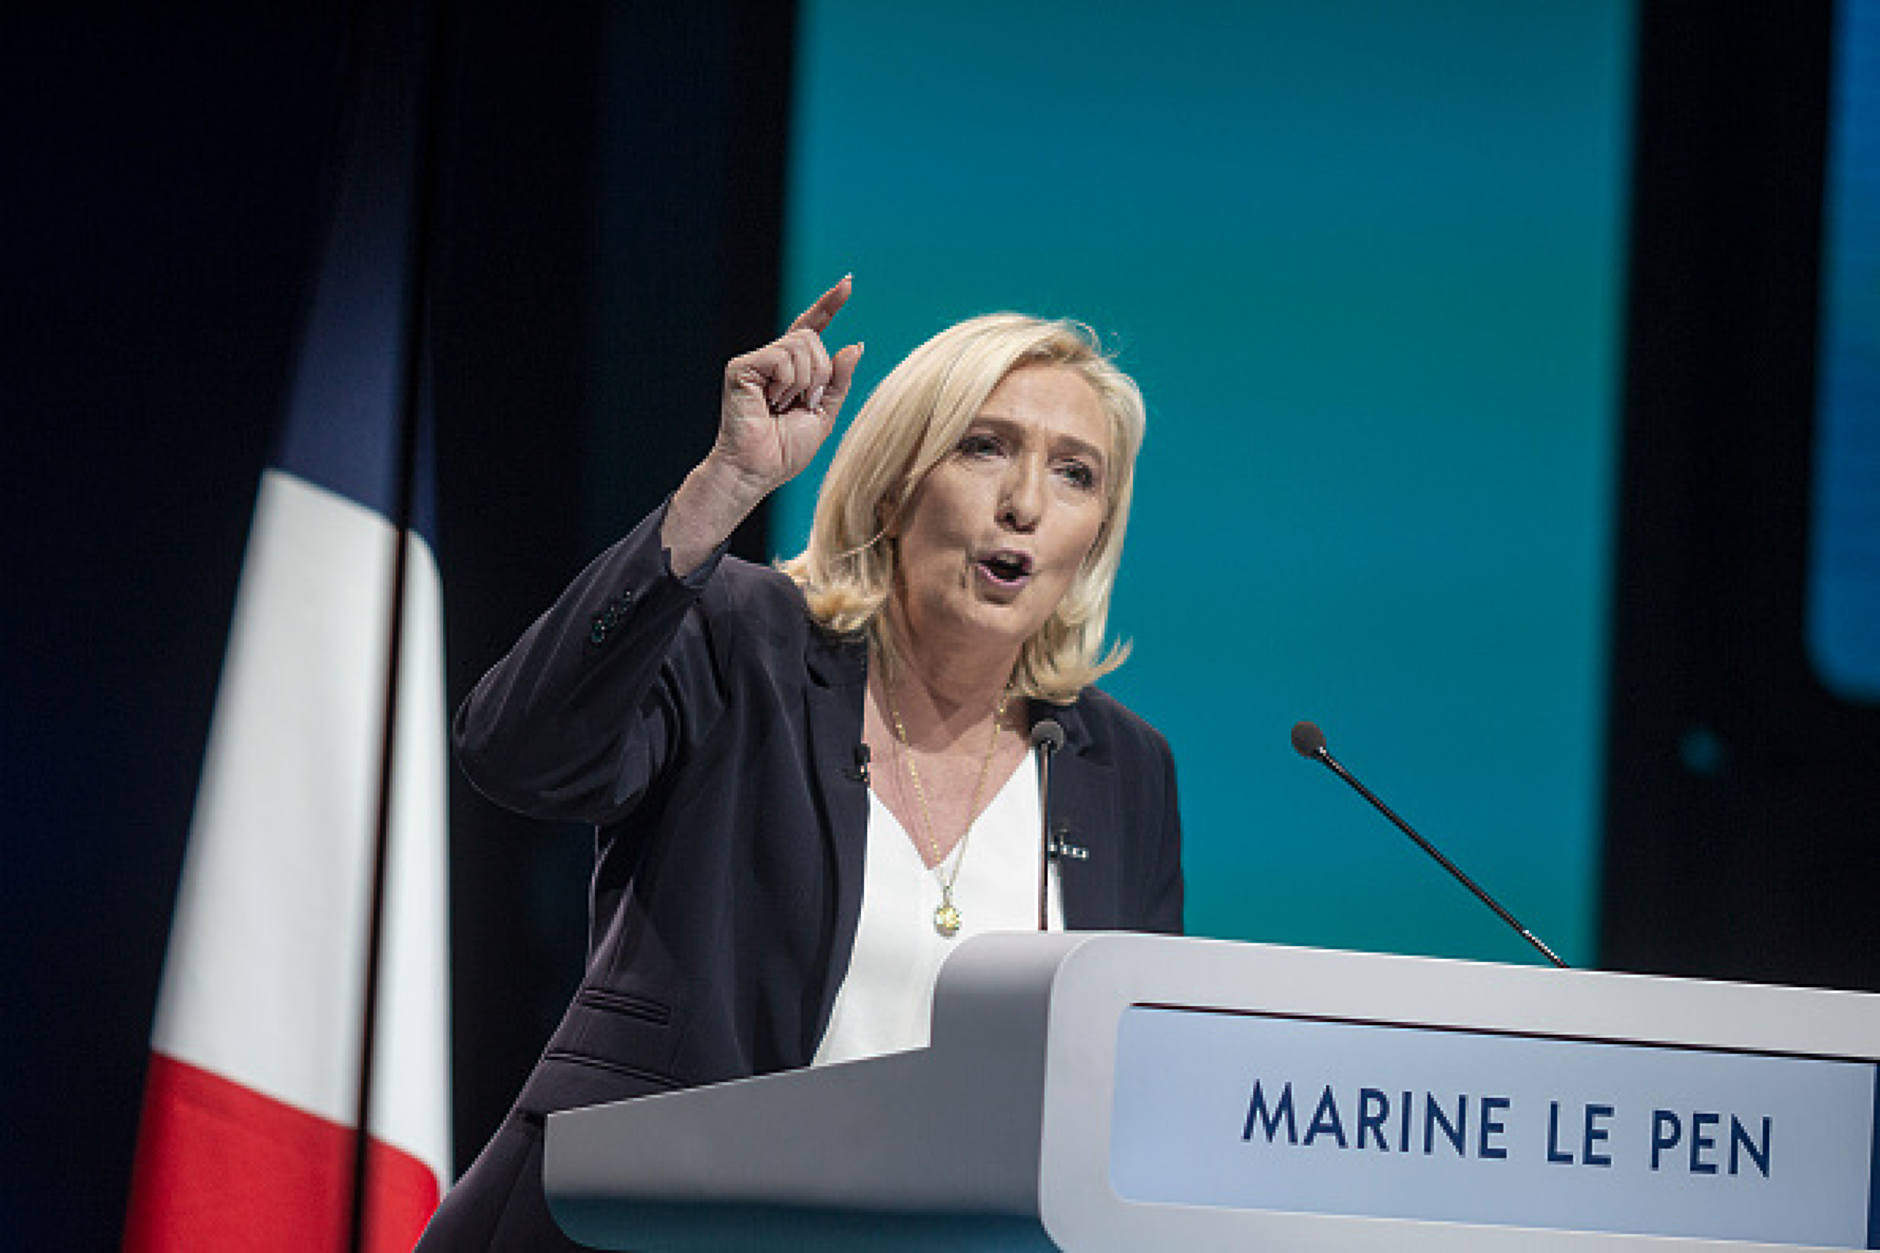 Крайната десница във Франция води с 36% преди първия тур на изборите 